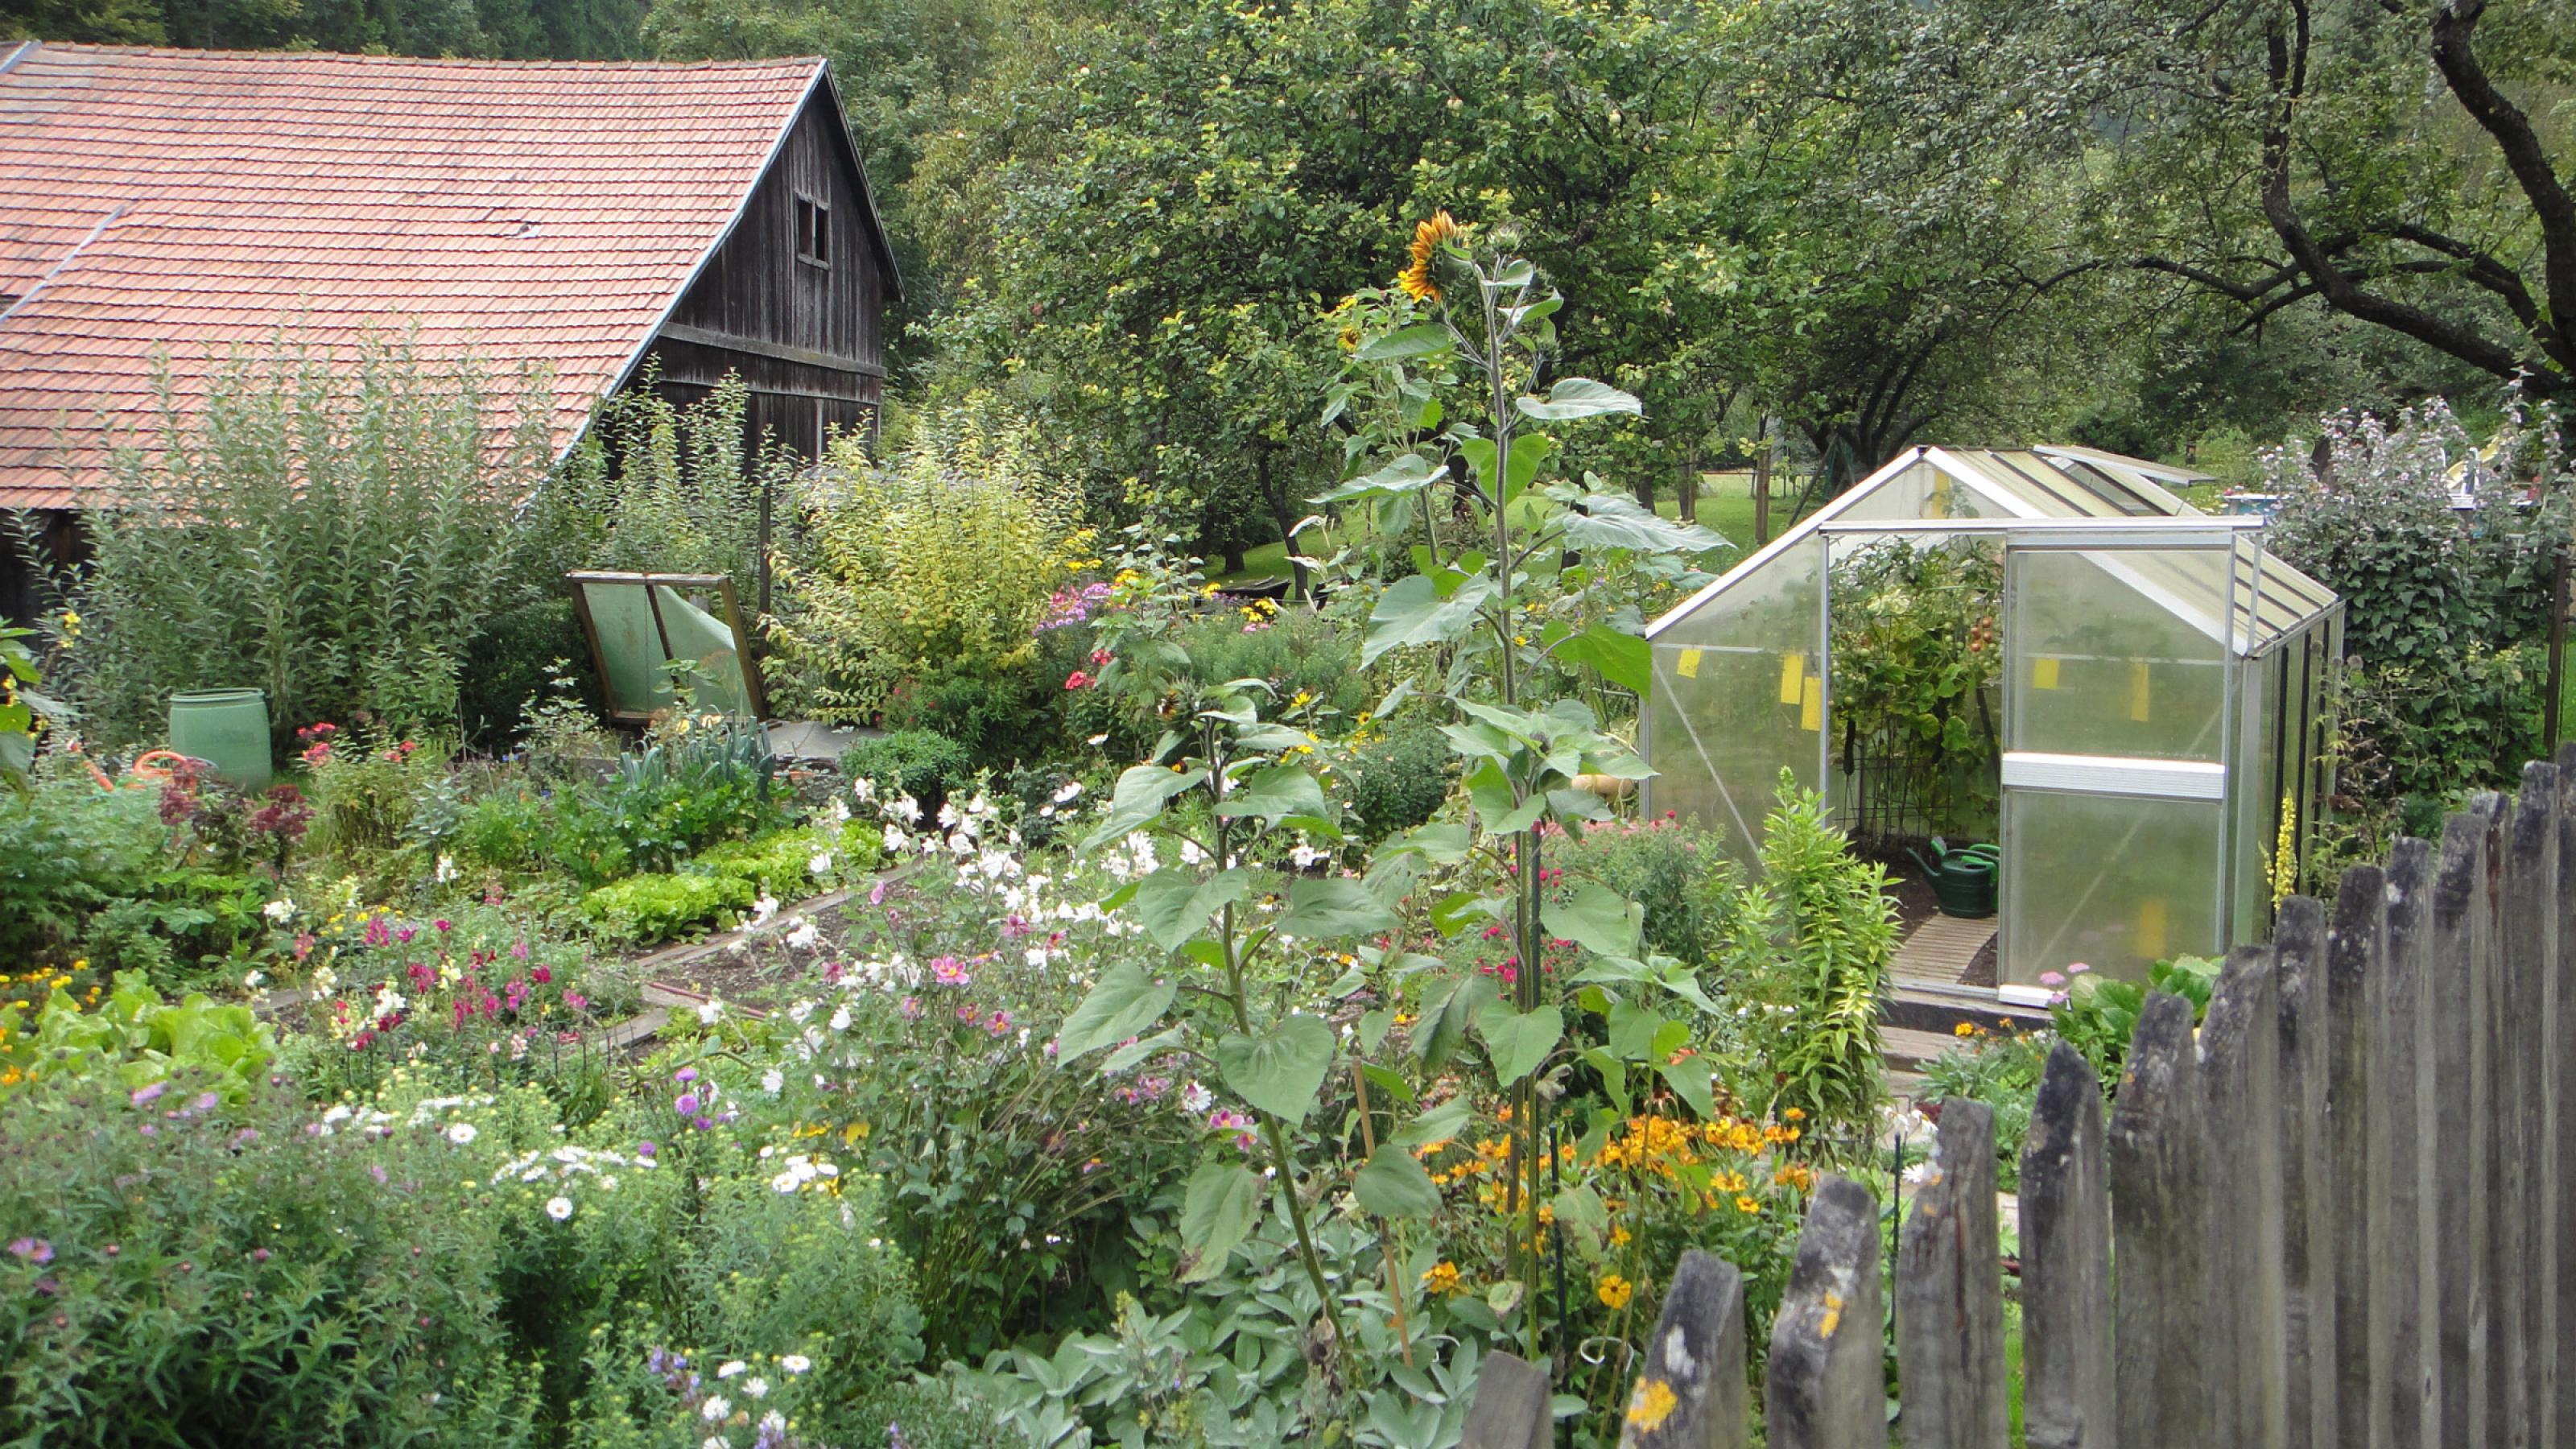 Ein bunter Bauerngarten mit Blumen, Gemüse, Glashaus, Lattenzaun und Holzstadel.